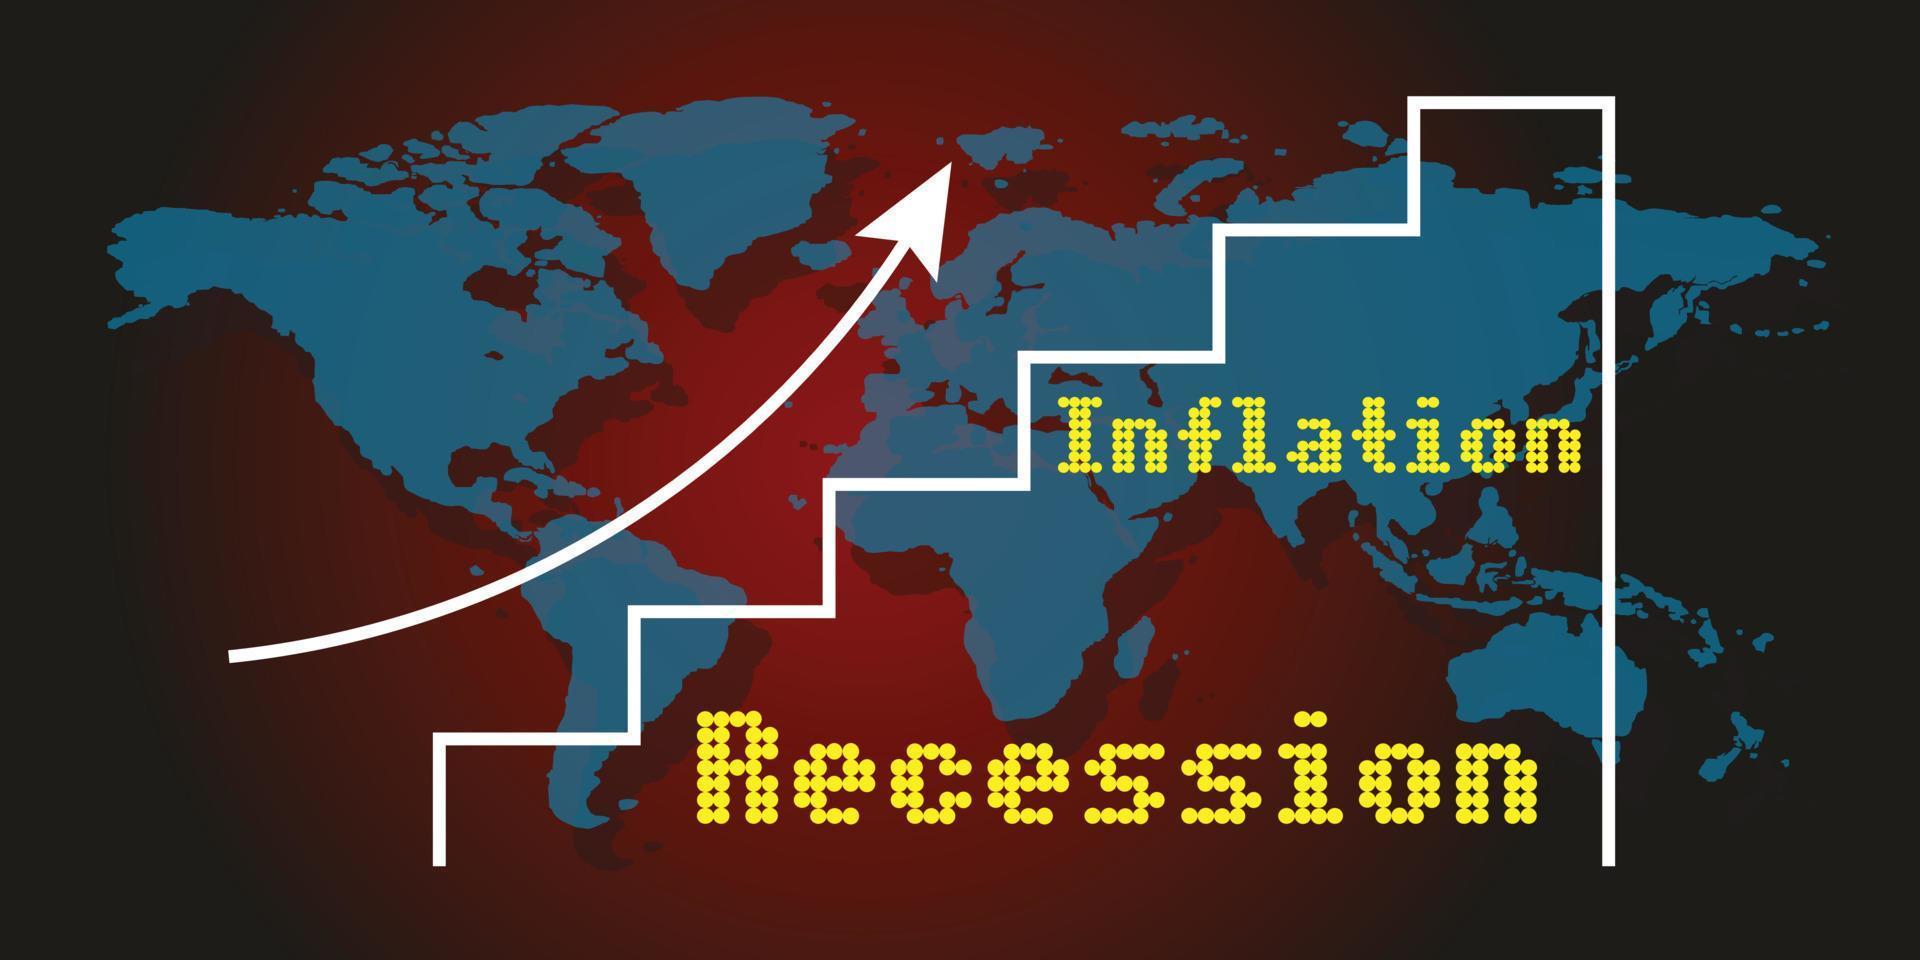 crise econômica global recessão inflação 2023 vetor